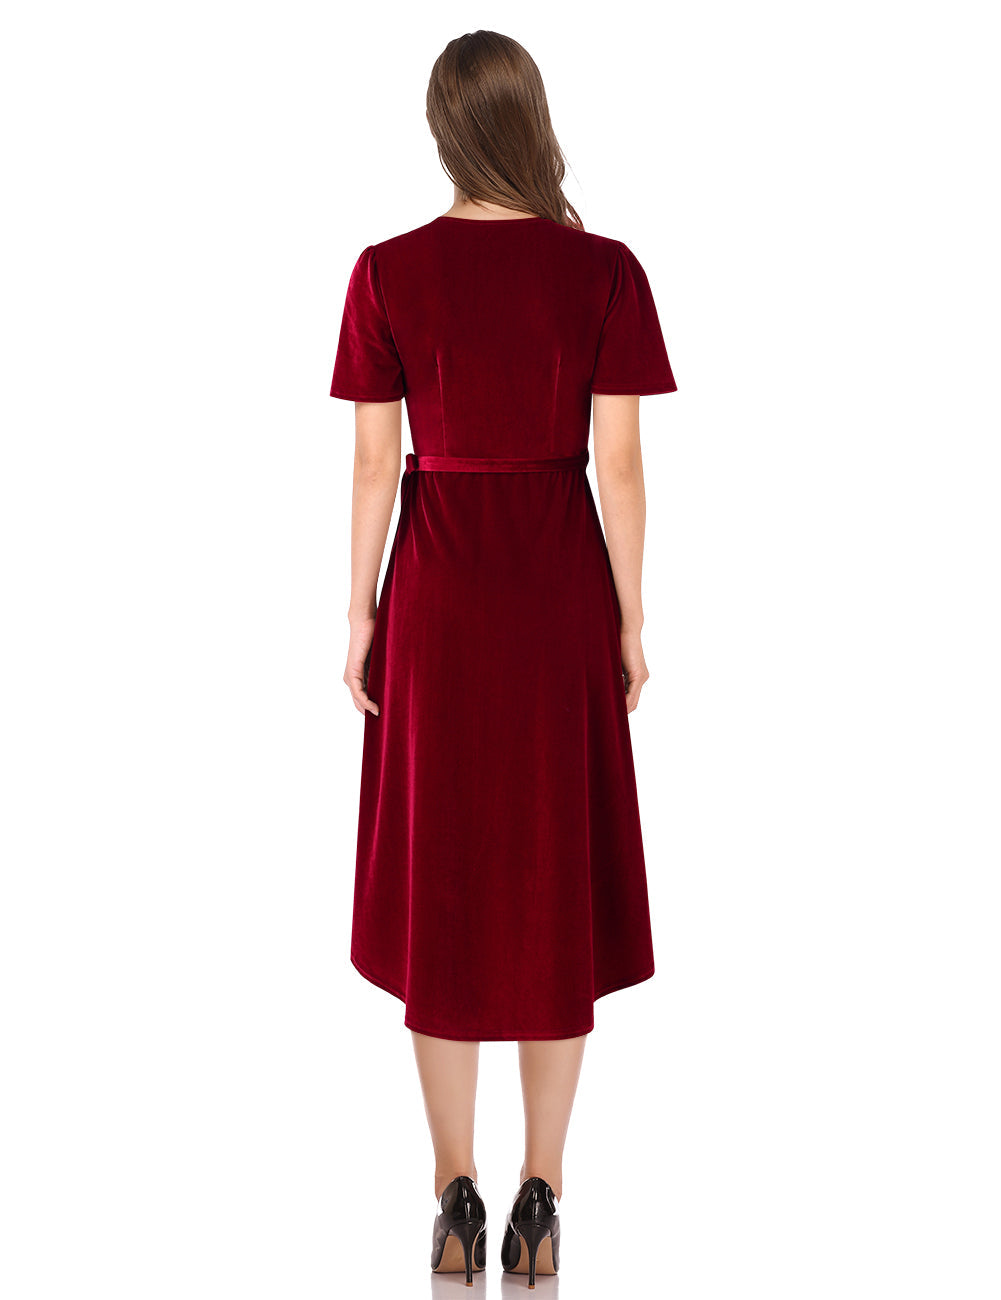 YESFASHION Women Velvet V-Neck Short Sleeve Empire Party Midi Dress Wine Red